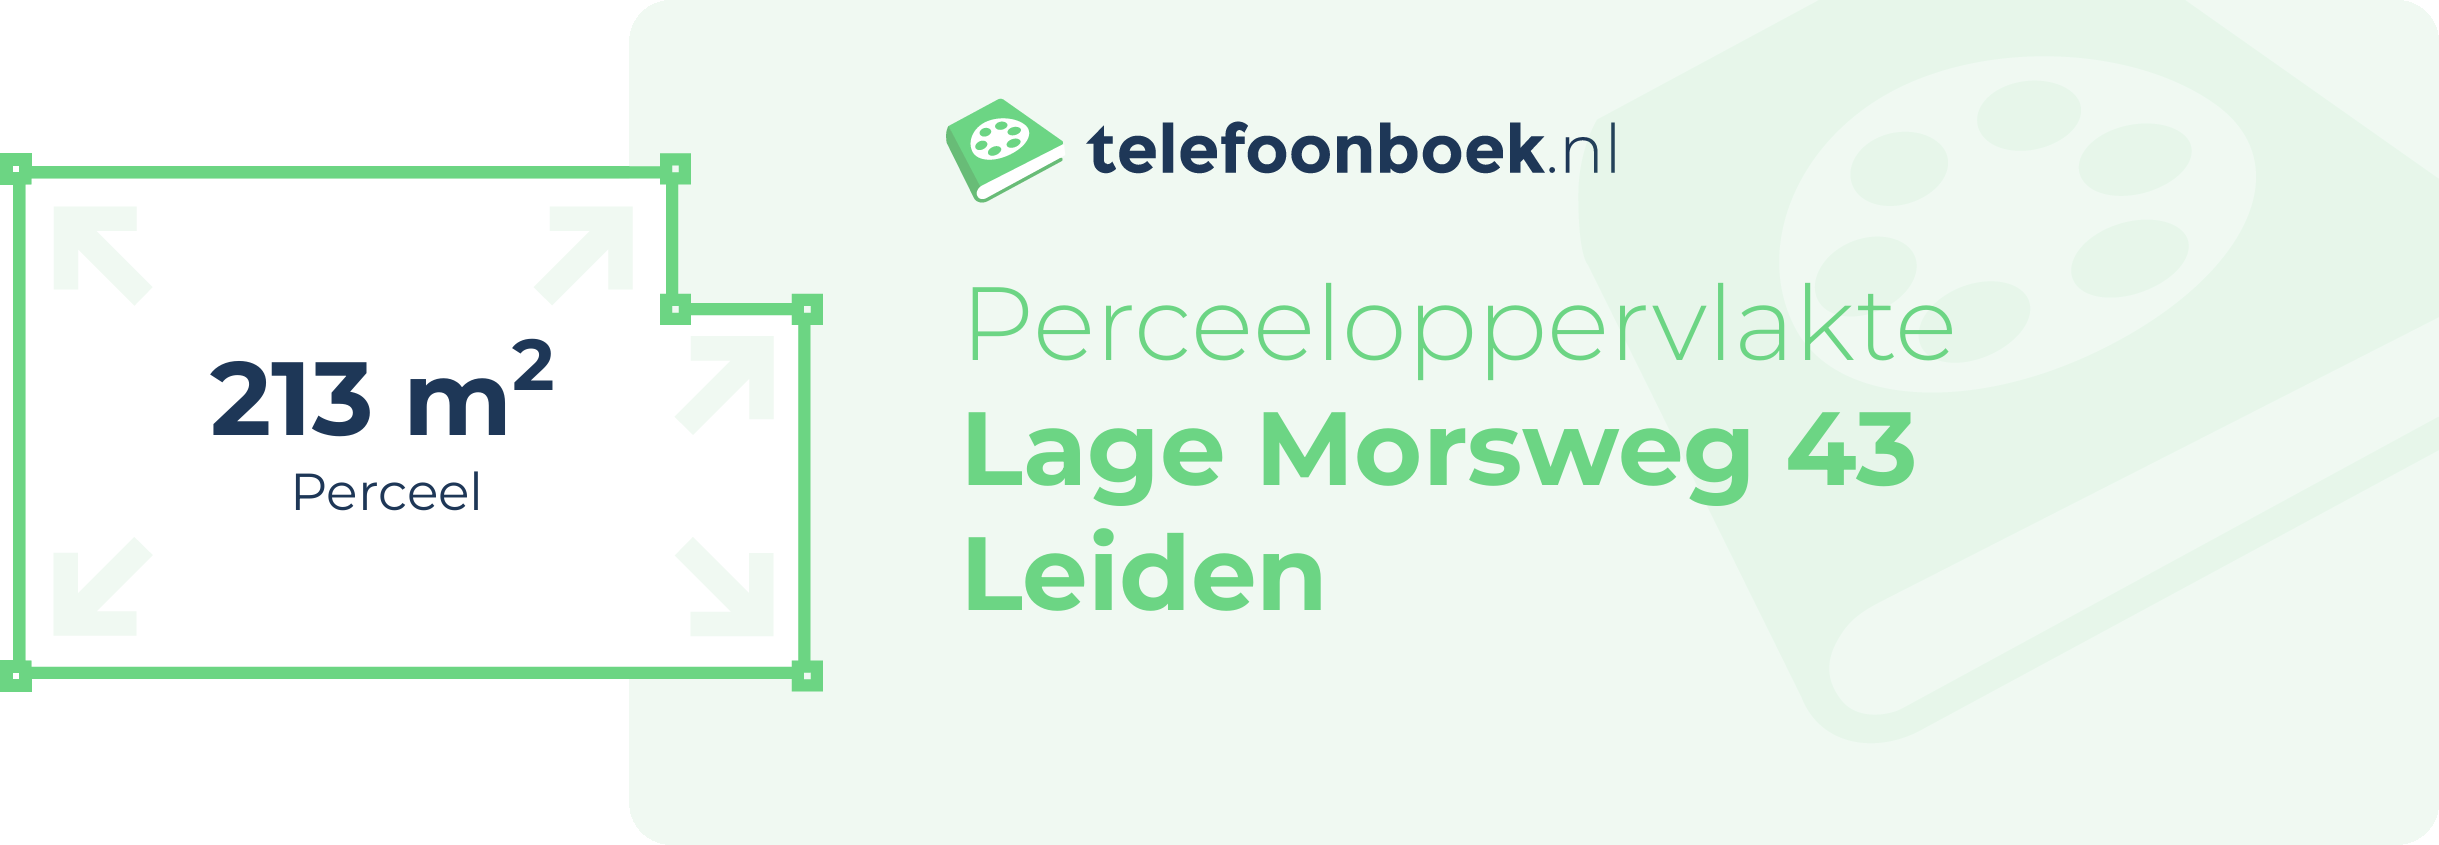 Perceeloppervlakte Lage Morsweg 43 Leiden